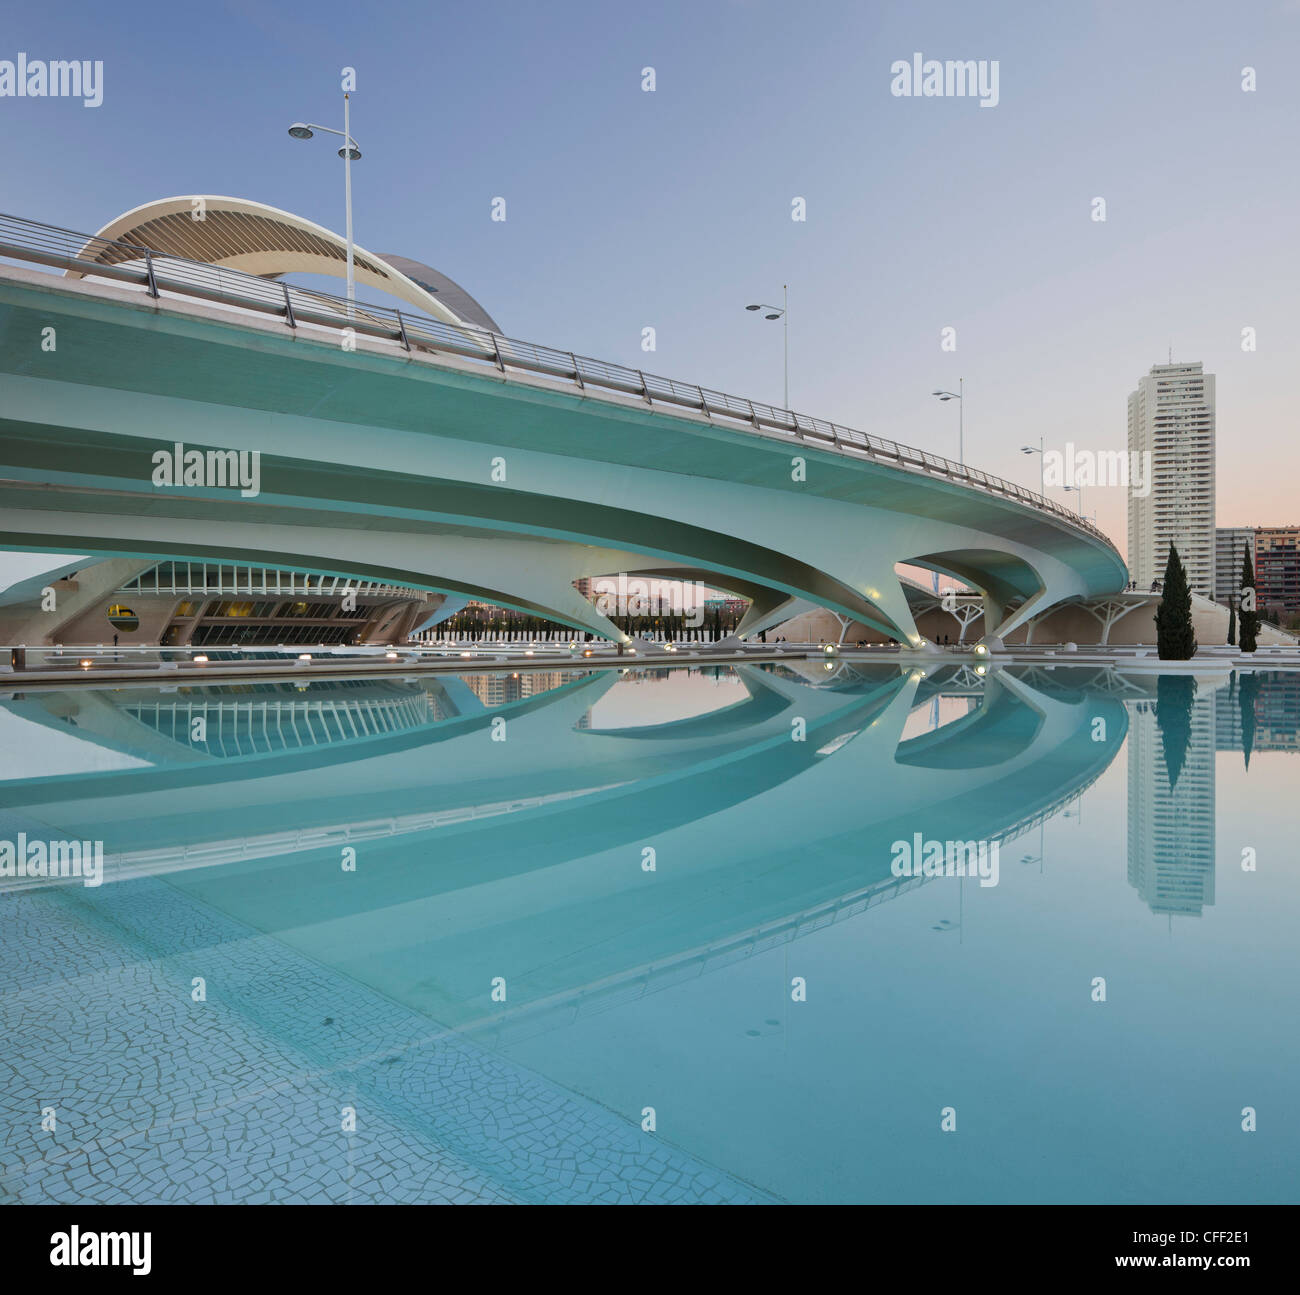 Reflection of bridge in the water, Ciudad de las Artes y de las Ciencias, Valencia, Spain, Europe Stock Photo